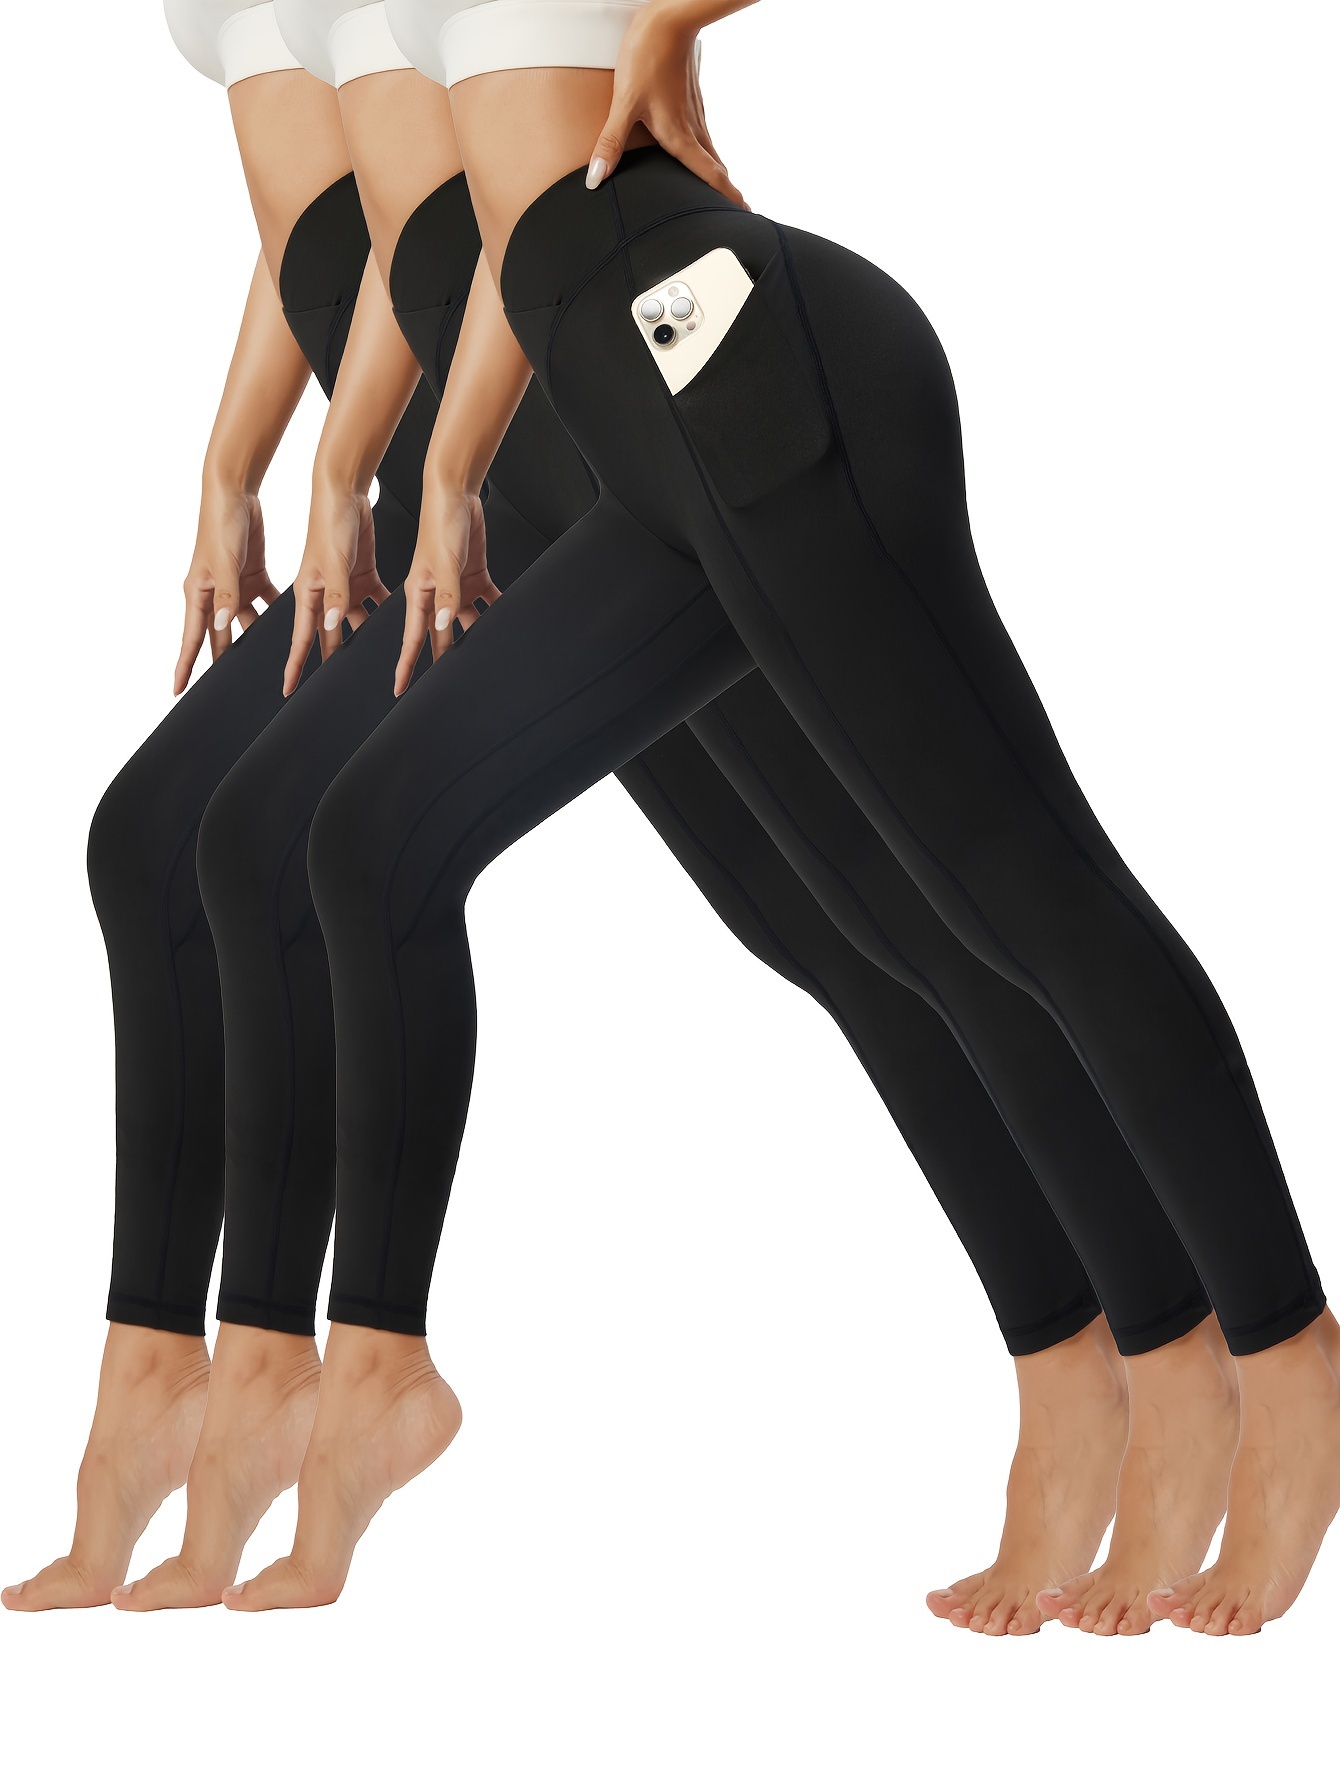 Buy Ewedoos Leggings with Pockets for Women Yoga Pants Women High